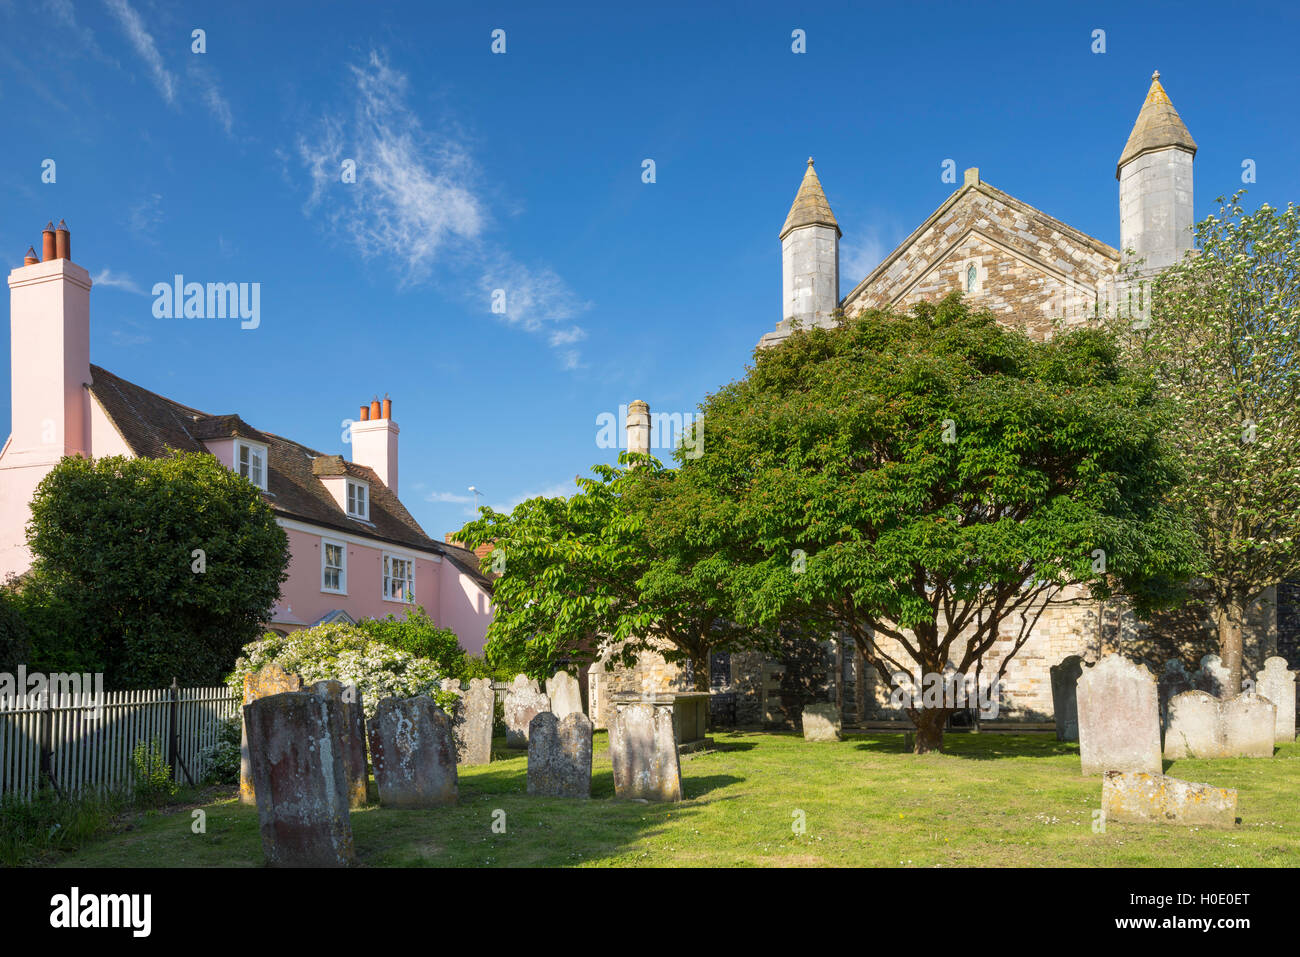 Place de l'église et l'église Sainte Marie de seigle. Le Sussex. L'Angleterre. UK Banque D'Images